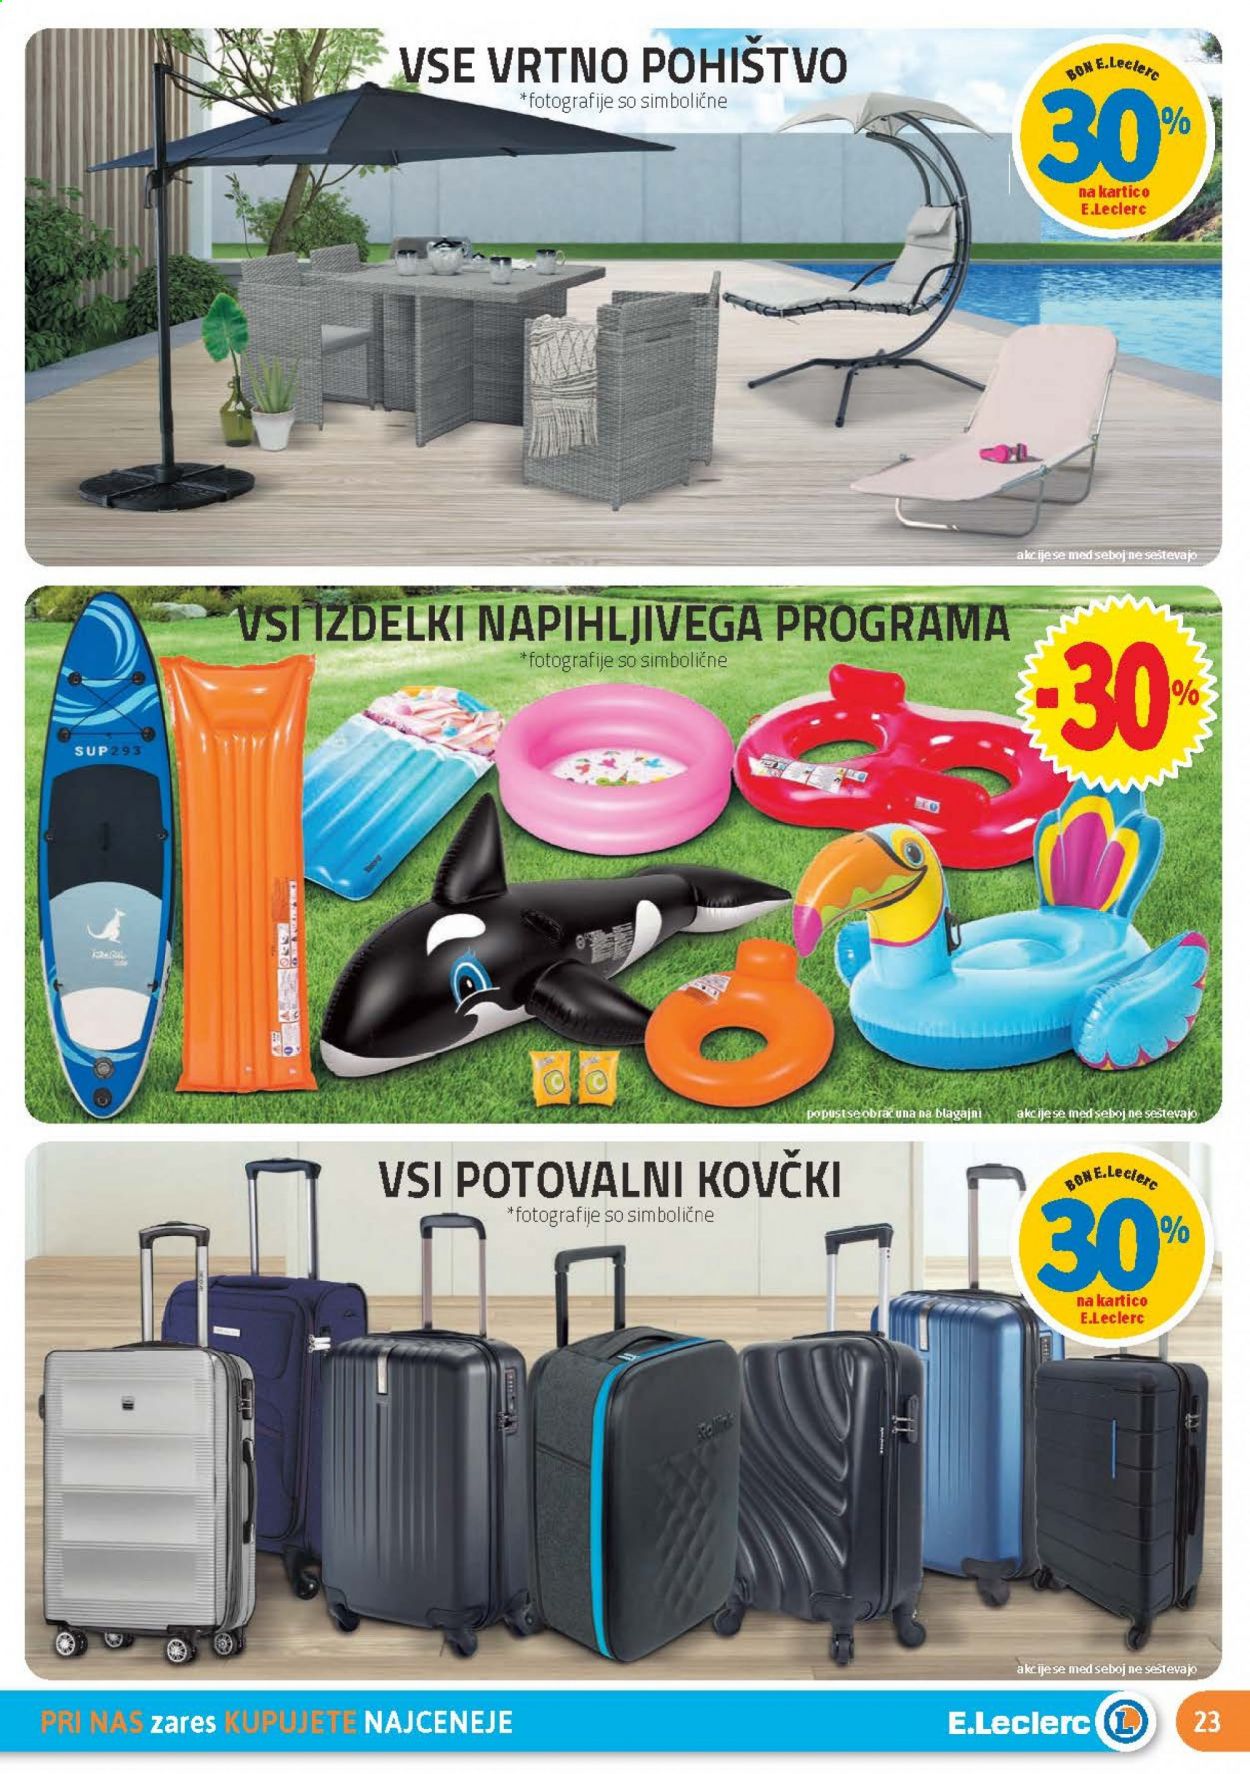 thumbnail - E.Leclerc katalog - 21.7.2021 - 31.7.2021 - Ponudba izdelkov - vrtno pohištvo, potovalni kovček. Stran 23.